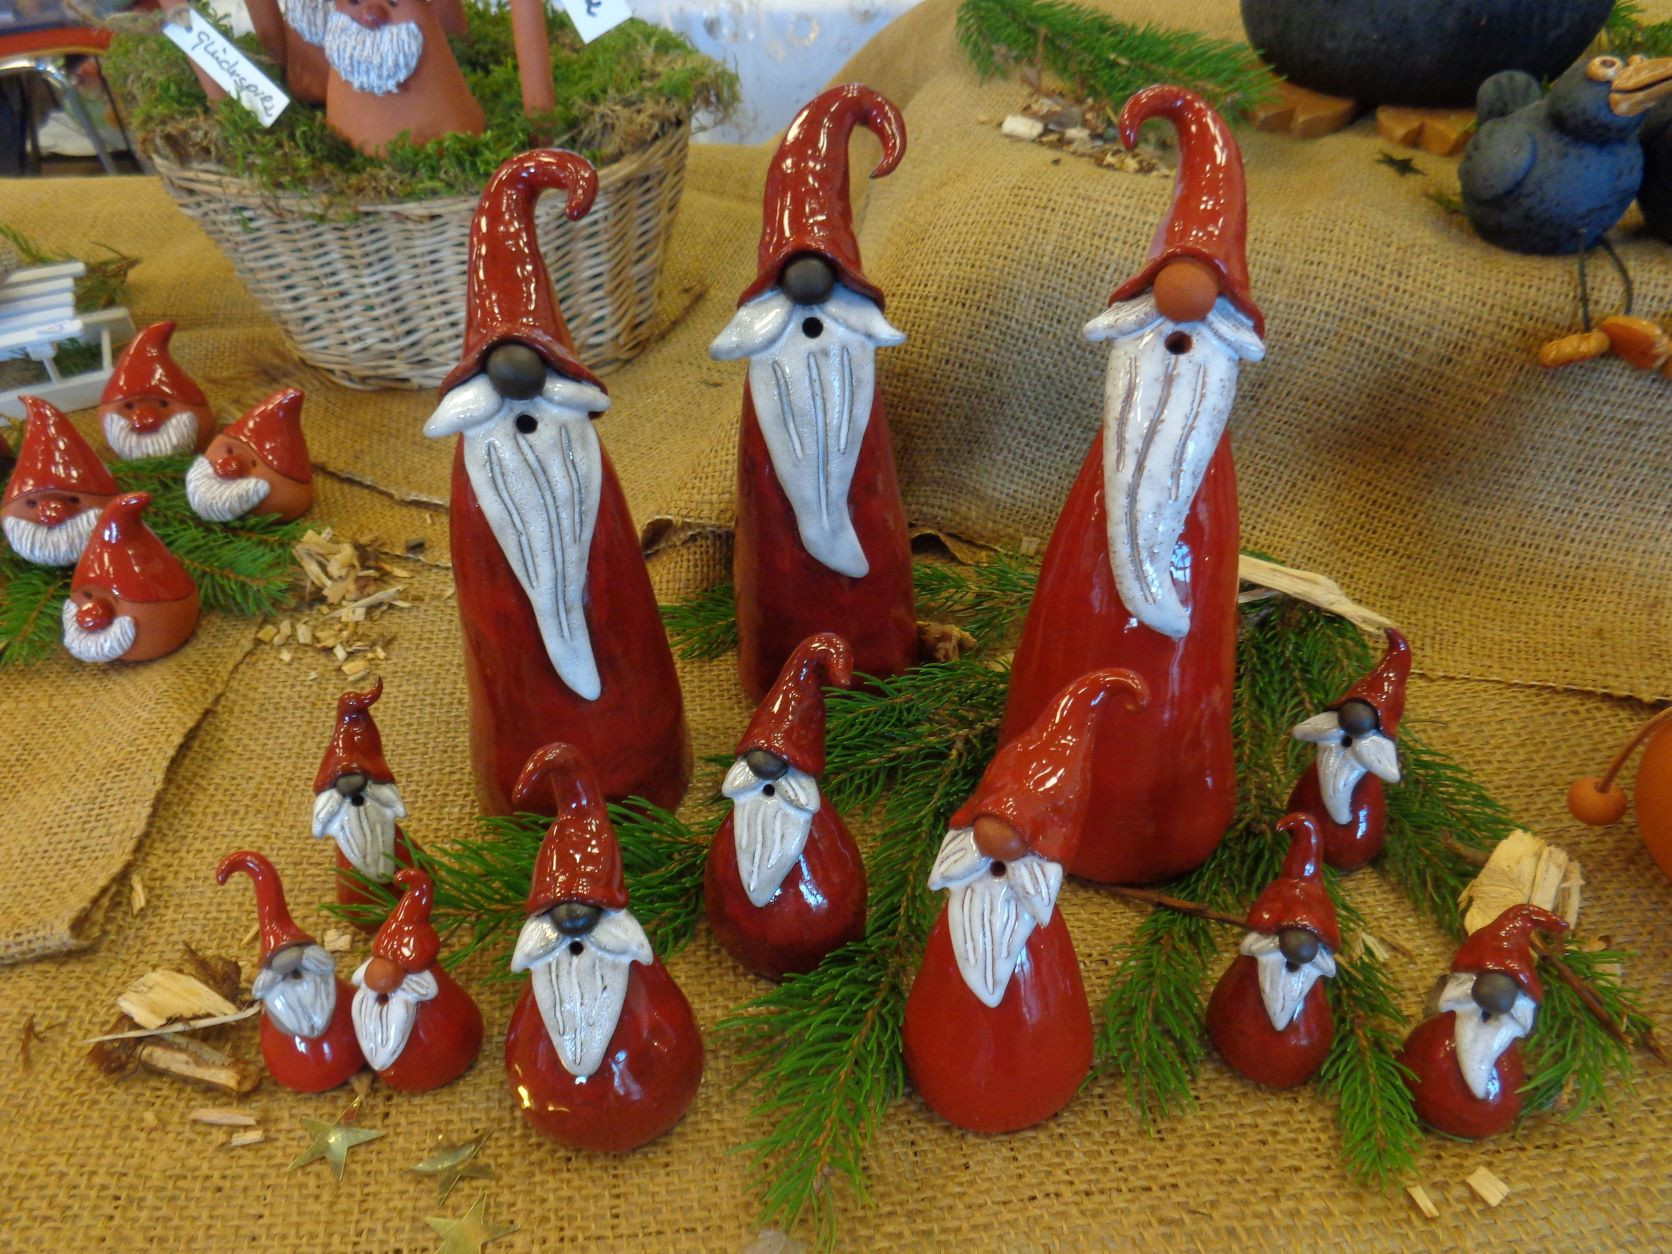 Kunsthandwerkmarkt Weihnachtsm nner Keramik